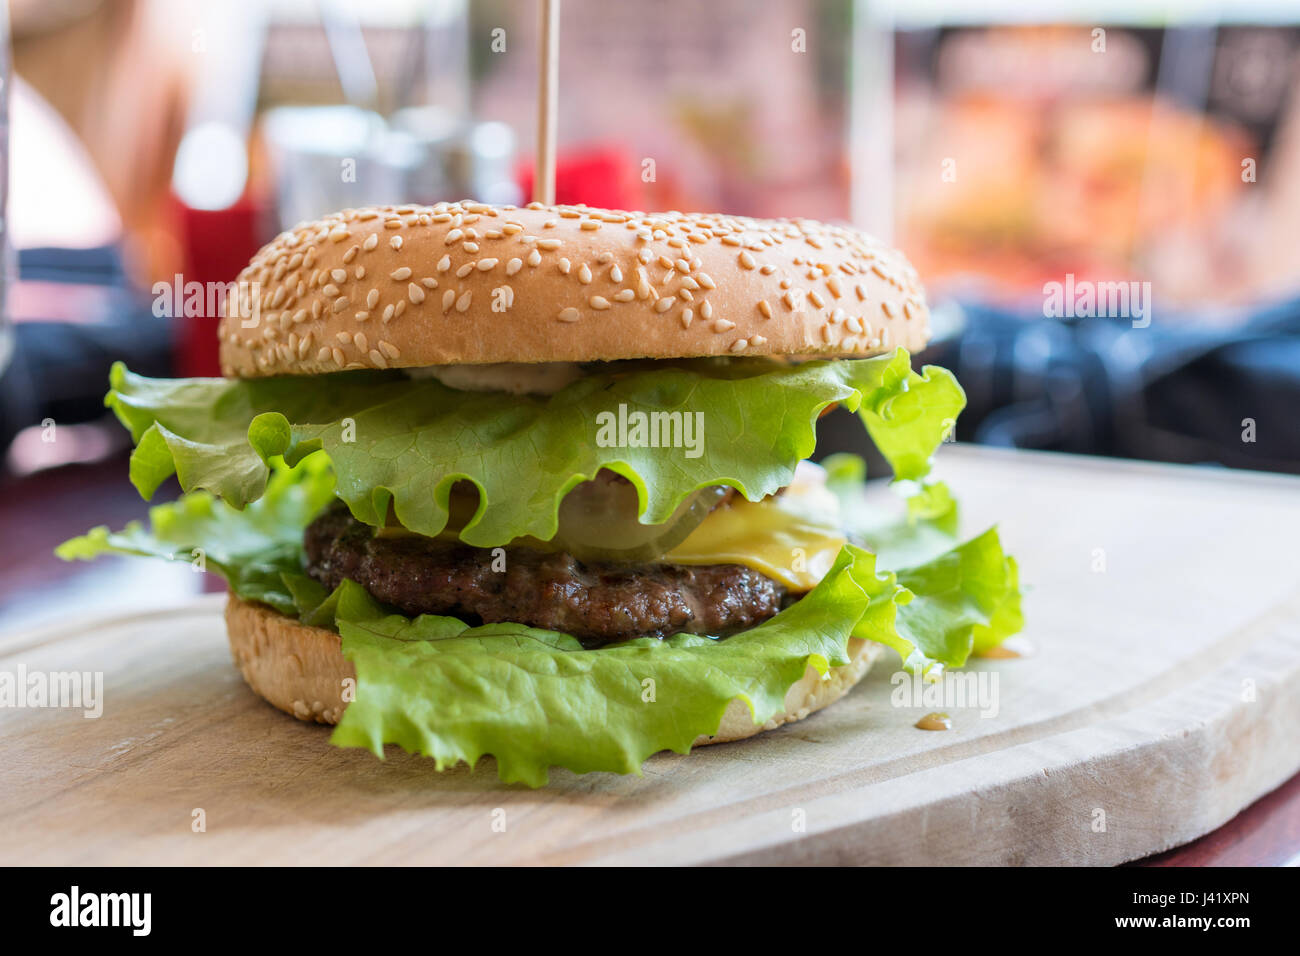 Frais délicieux Hamburger Cheeseburger avec burger de boeuf grillé, du fromage sur une table in restaurant Banque D'Images